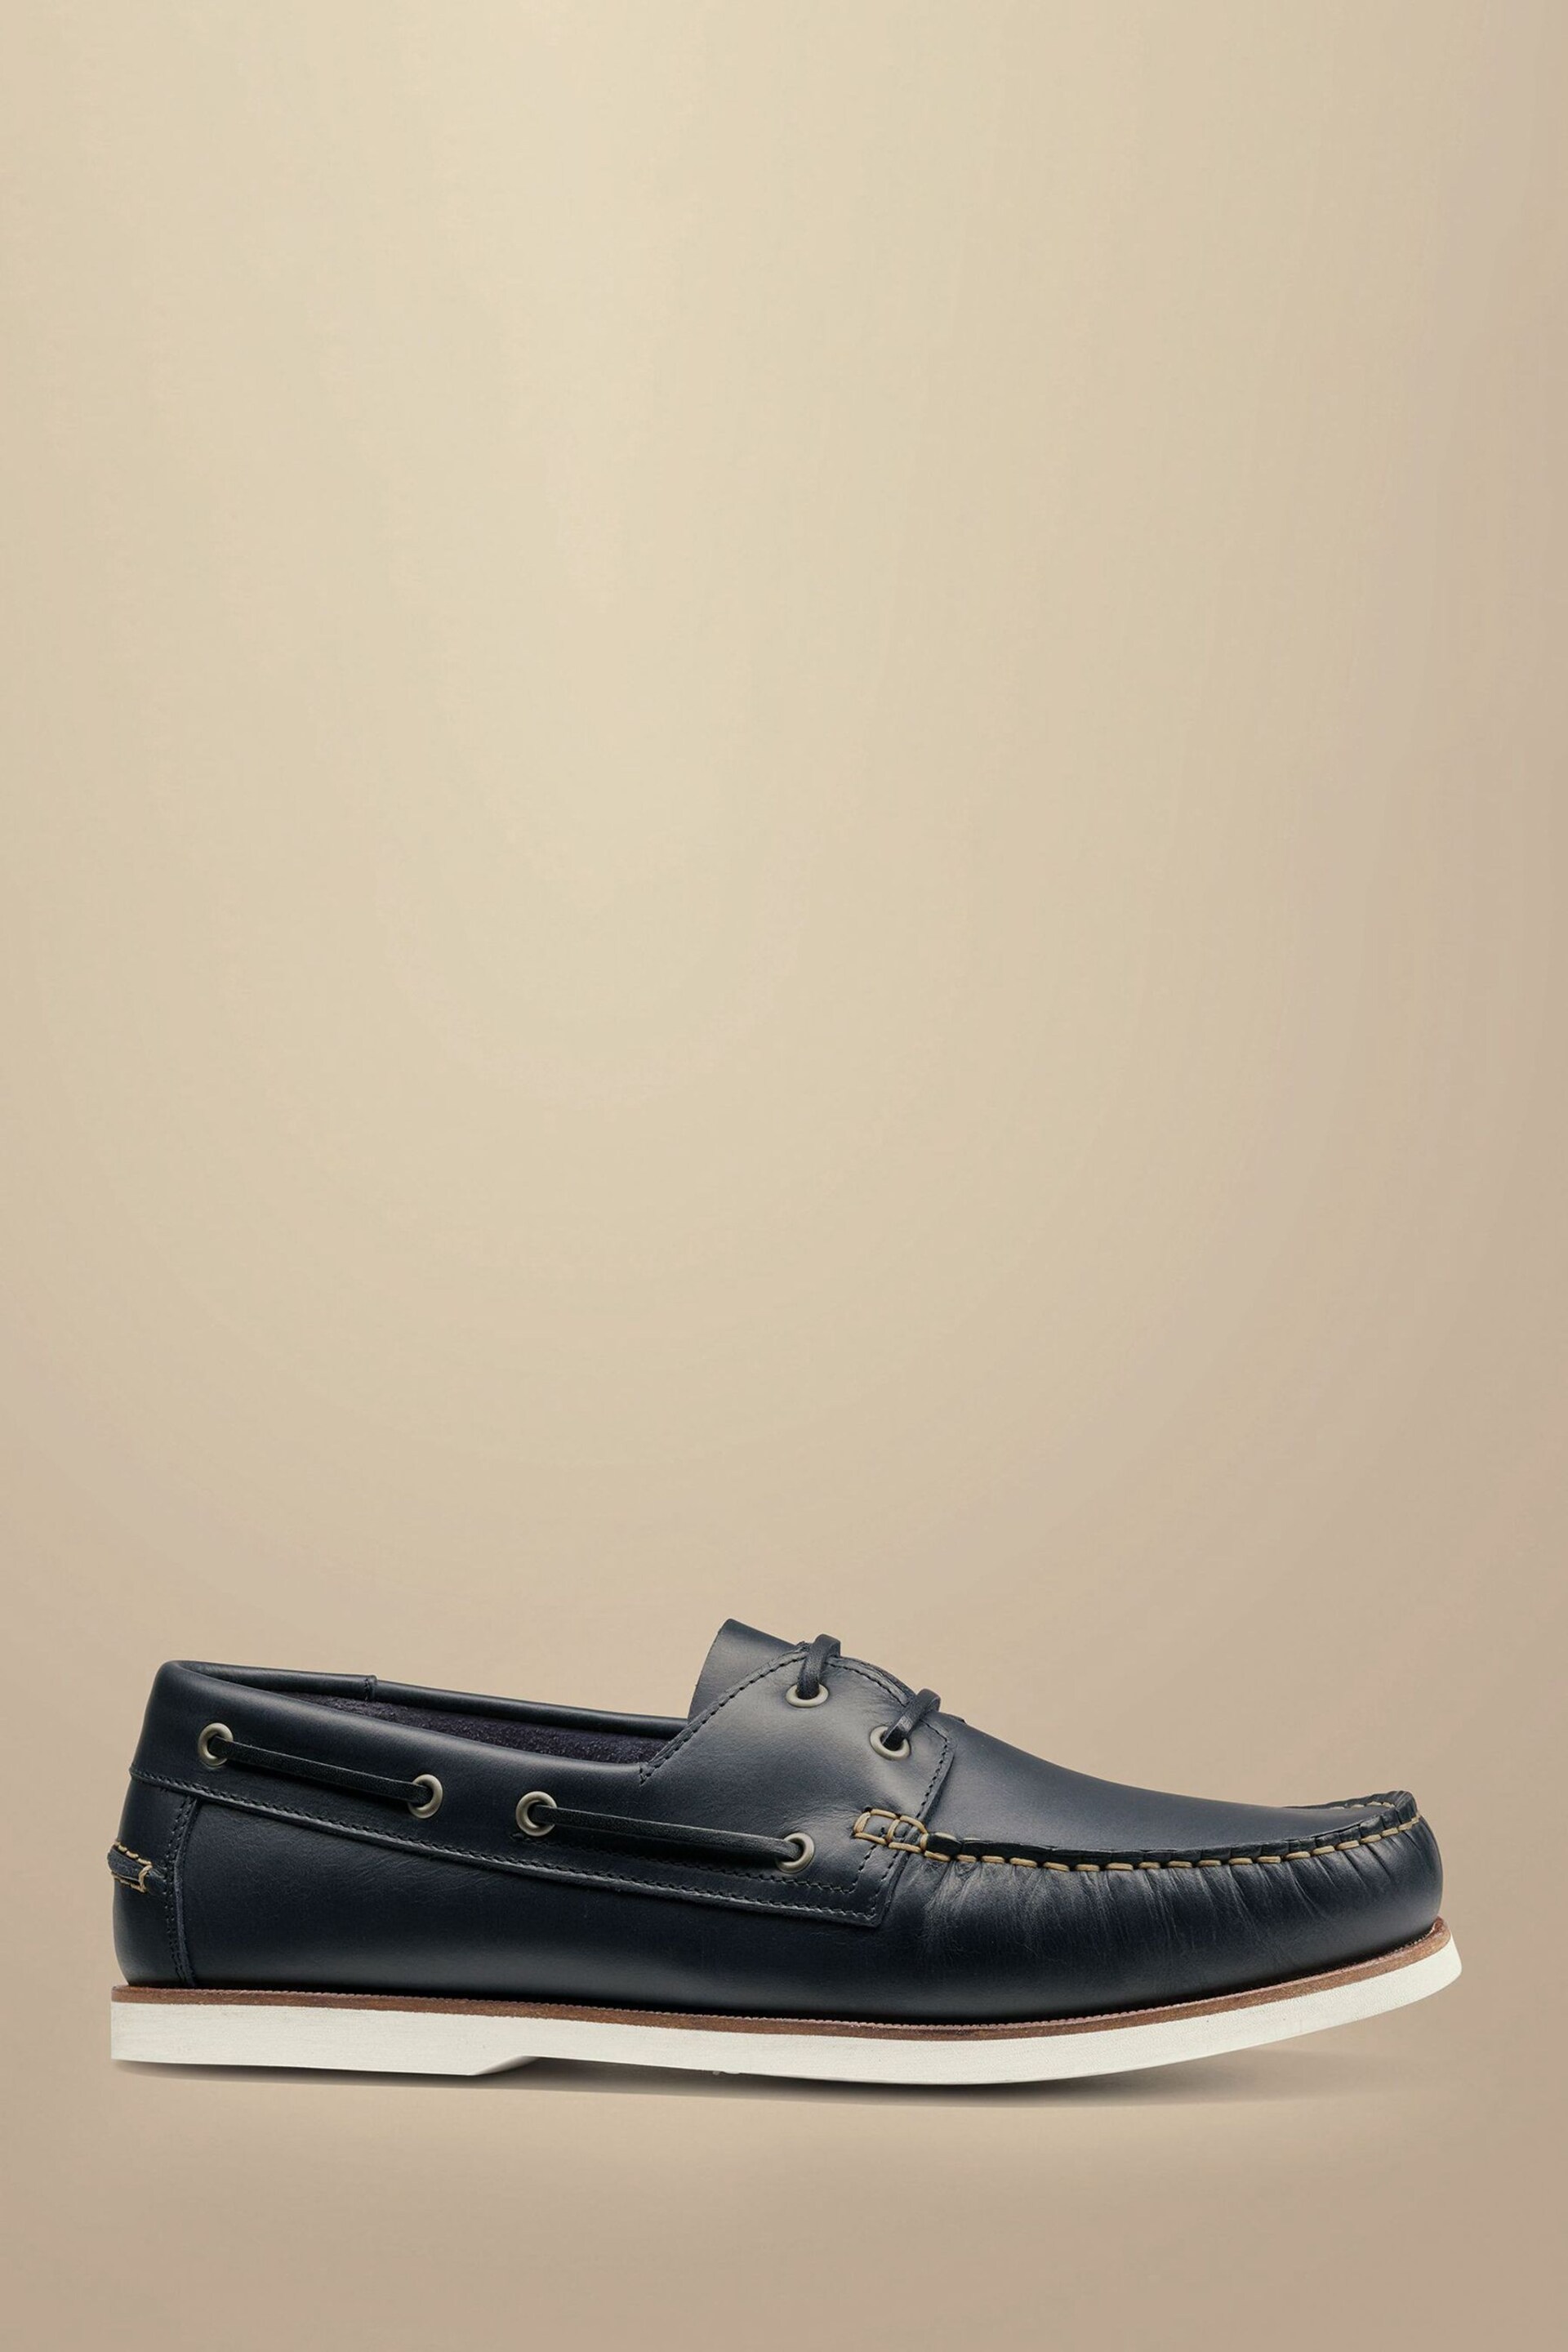 Charles Tyrwhitt Blue Charles Tyrwhitt Blue Boat Shoes - Image 1 of 4